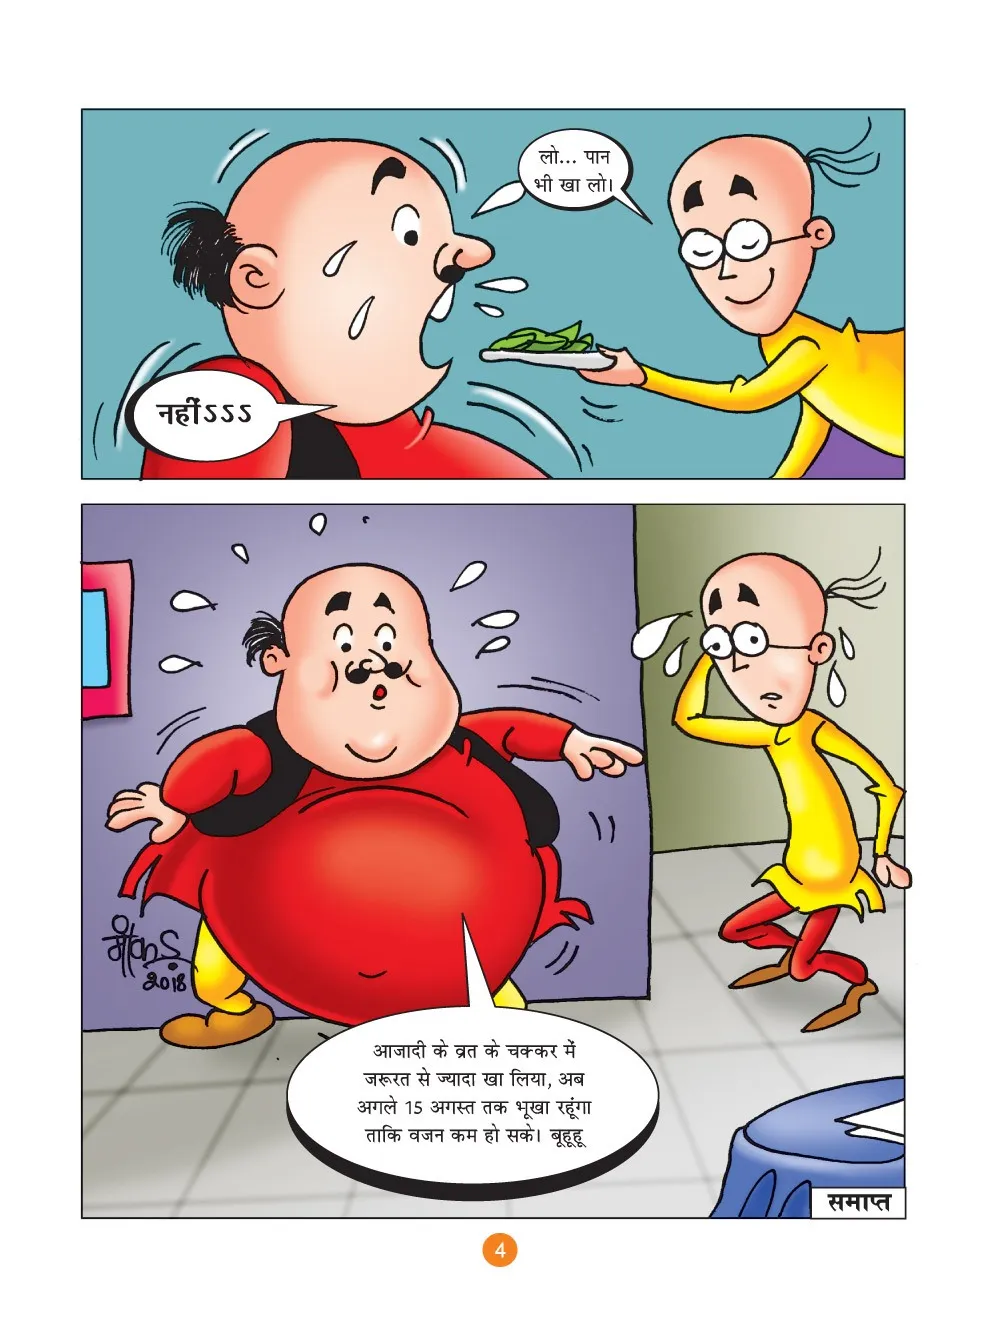 मोटू पतलू की कॉमिक्स- (Motu Patlu Ki Comics)  स्वतंत्रता दिवस का व्रत :